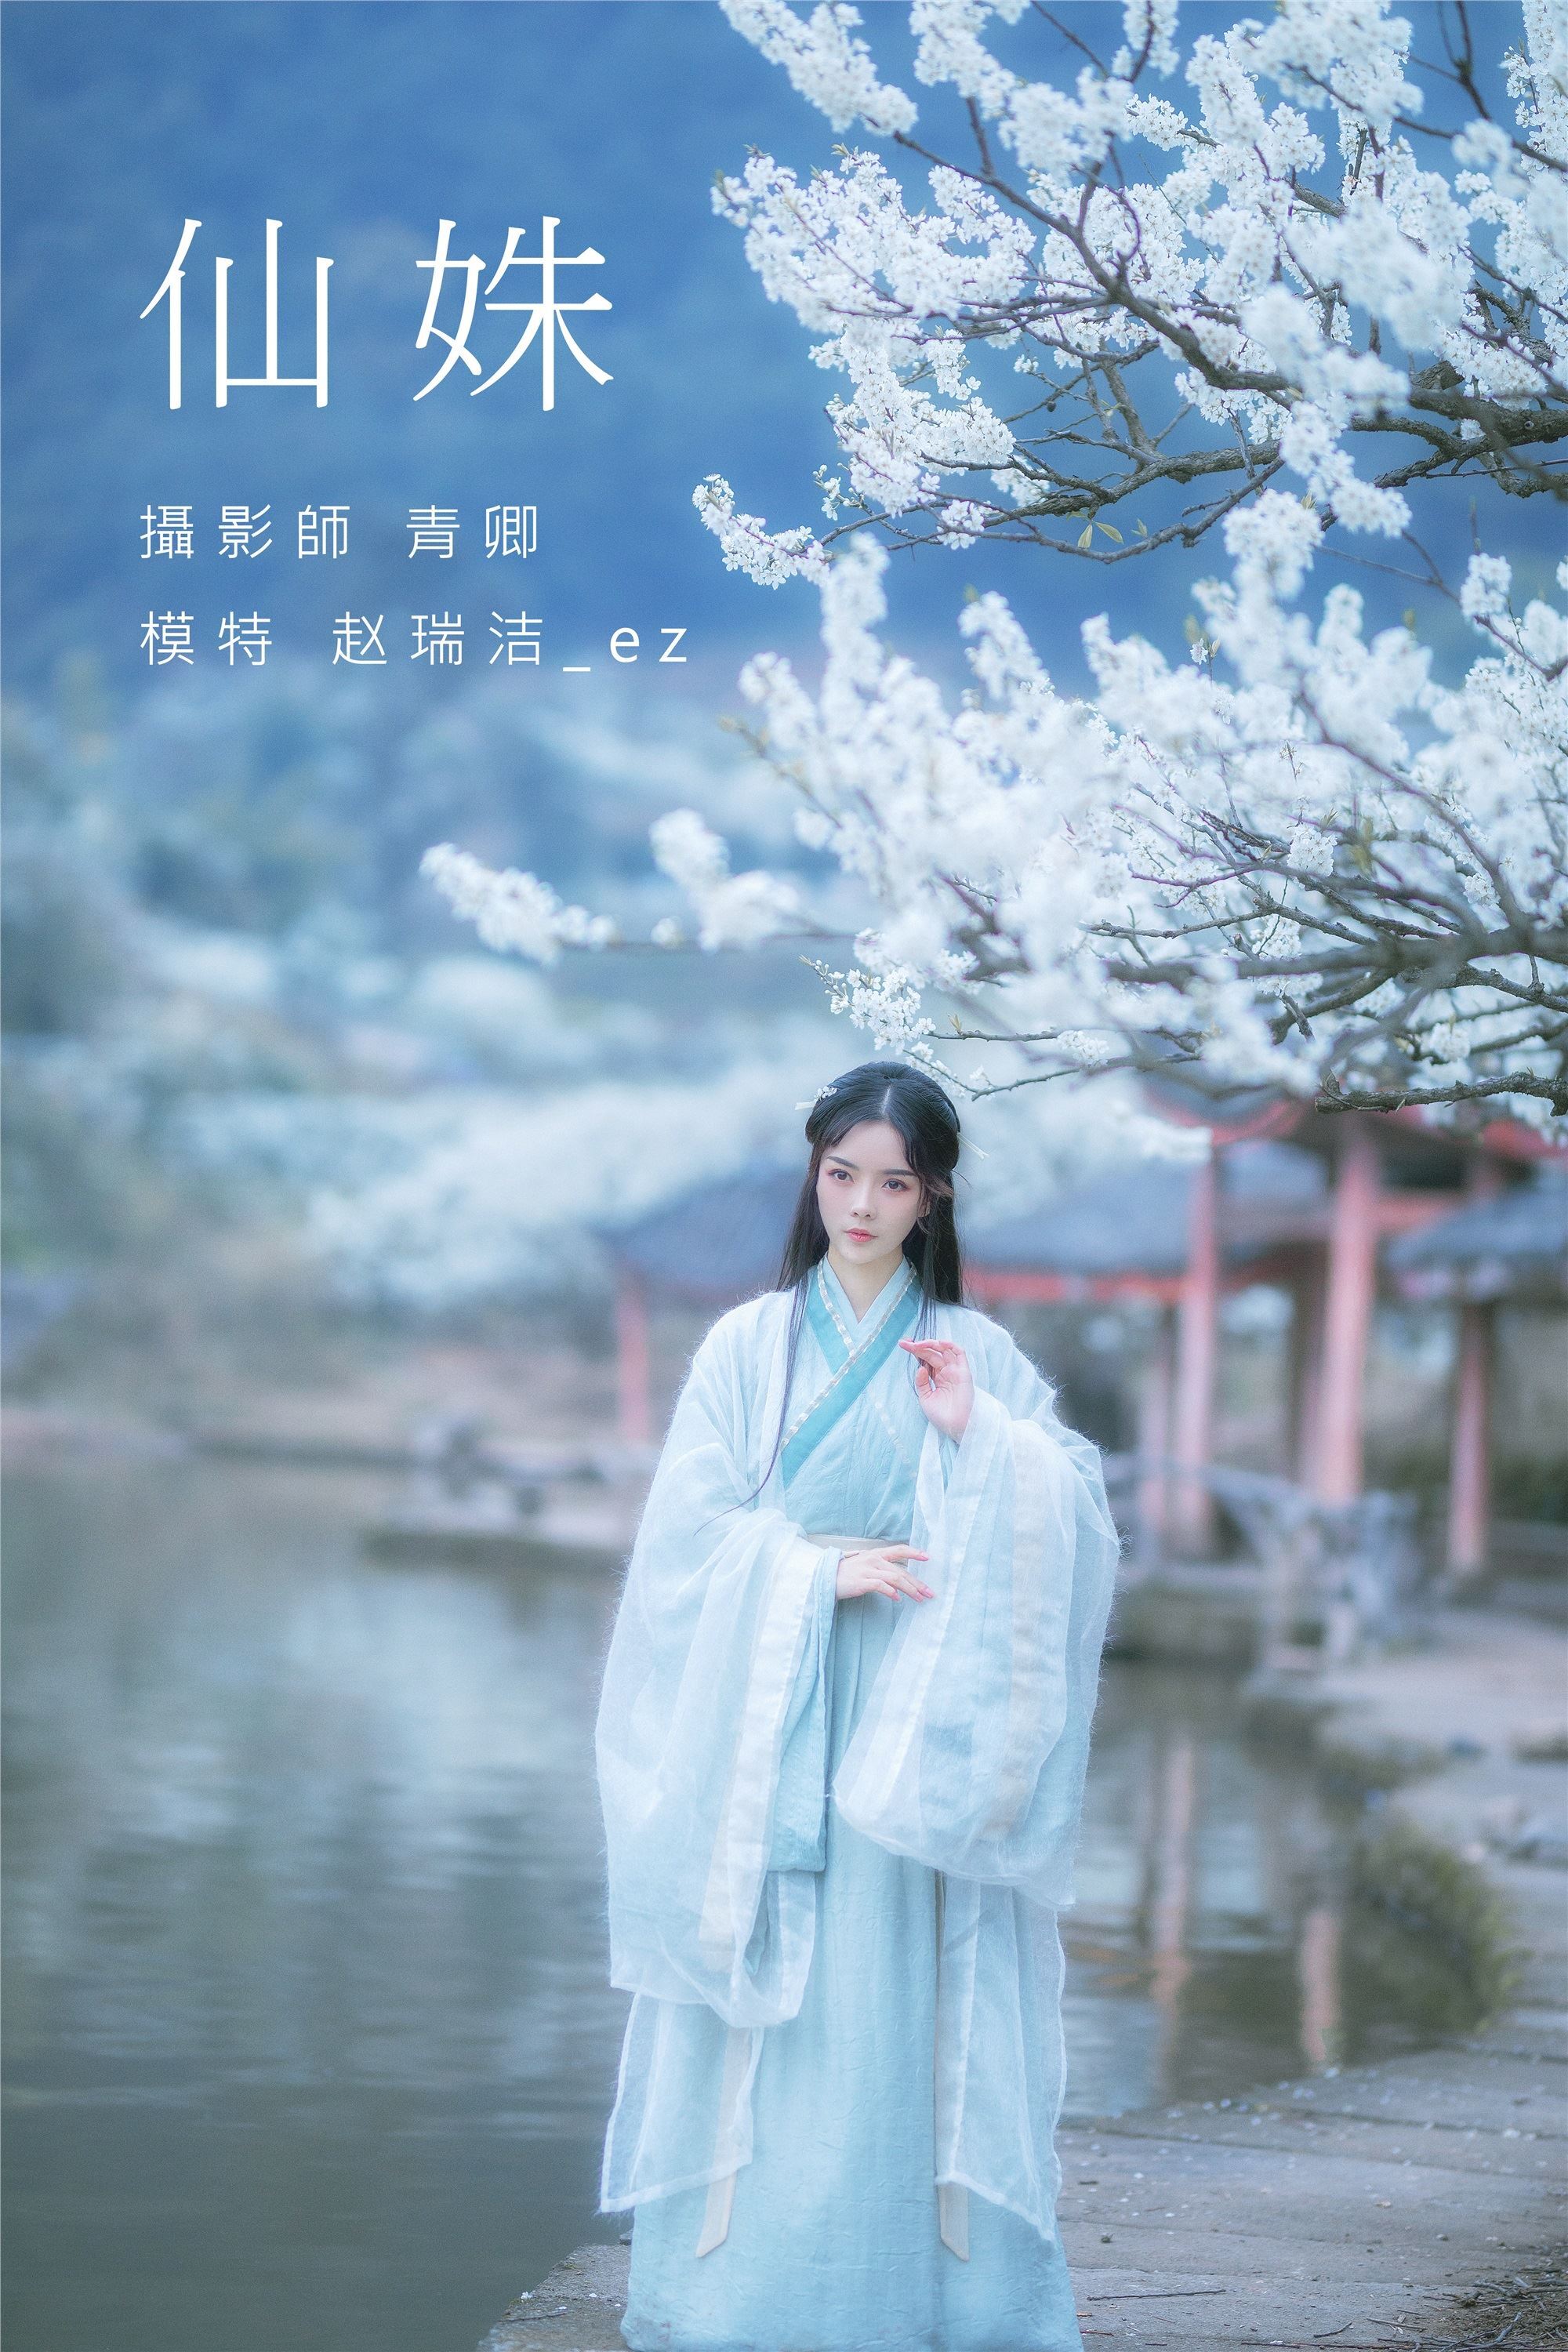 YITUYU Art Picture Language 2021.09.07 Xian Shu Zhao Ruijie ez